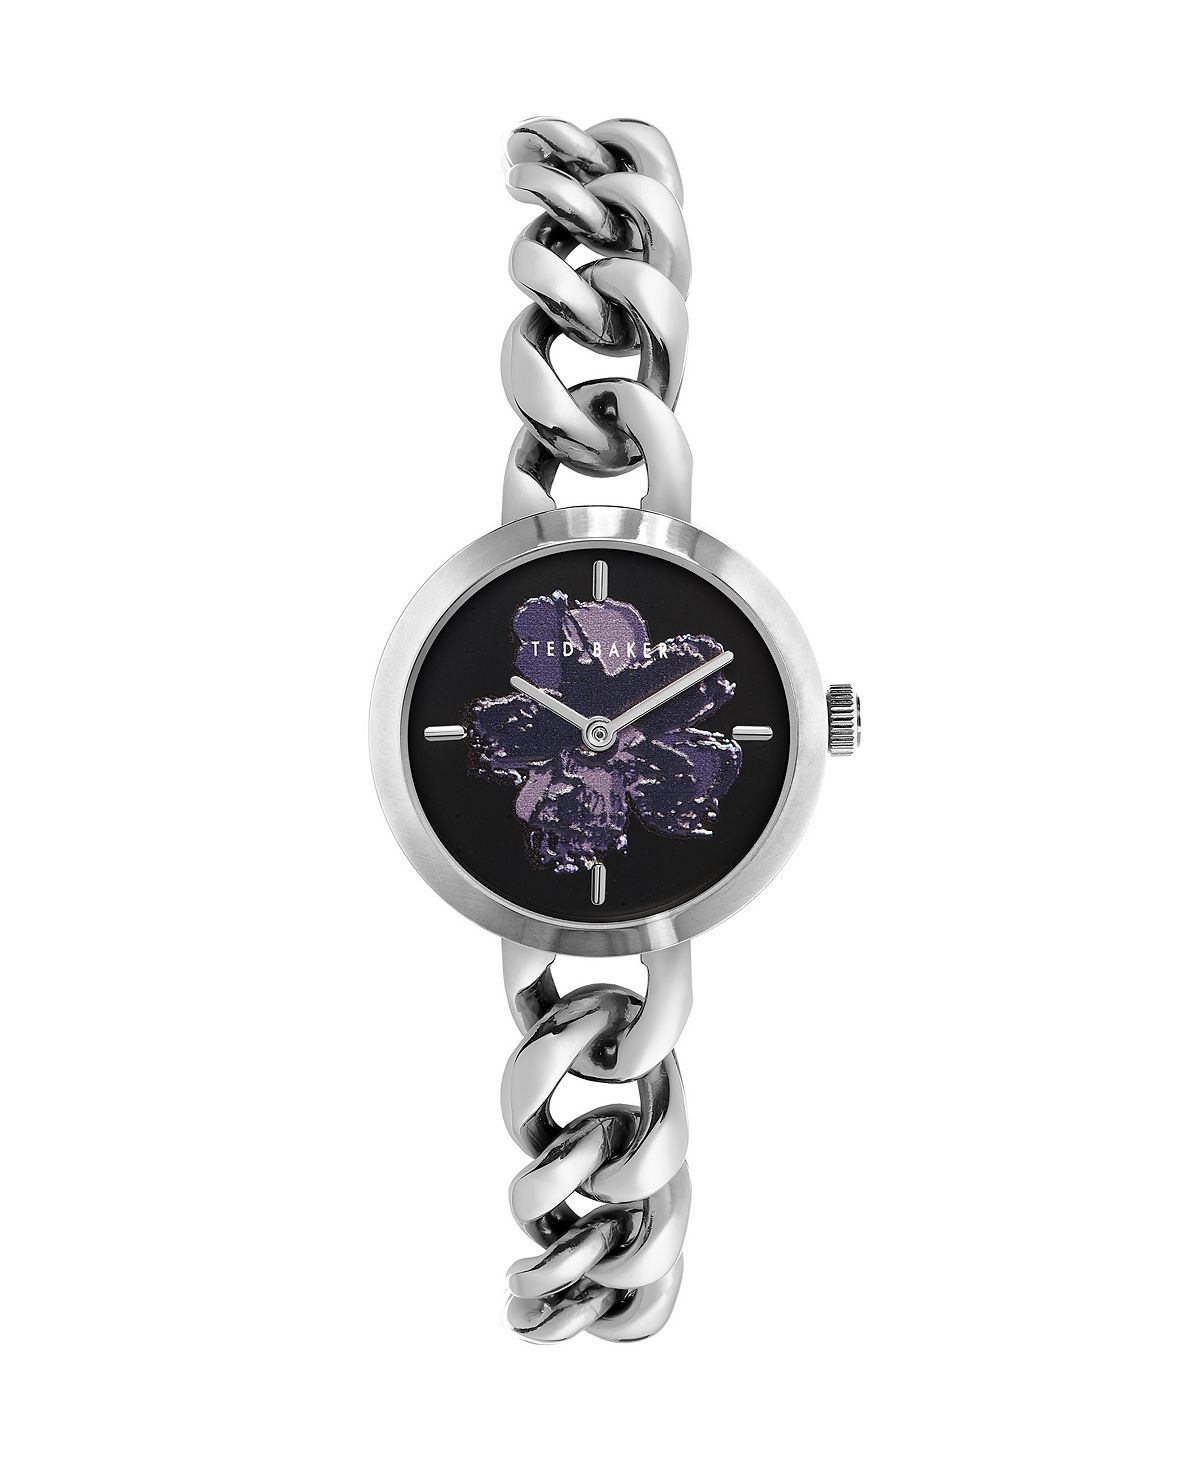 Женские часы Maiisie серебристого цвета с браслетом из нержавеющей стали, 28 мм Ted Baker женские часы maiisie серебристого цвета с браслетом из нержавеющей стали 28 мм ted baker